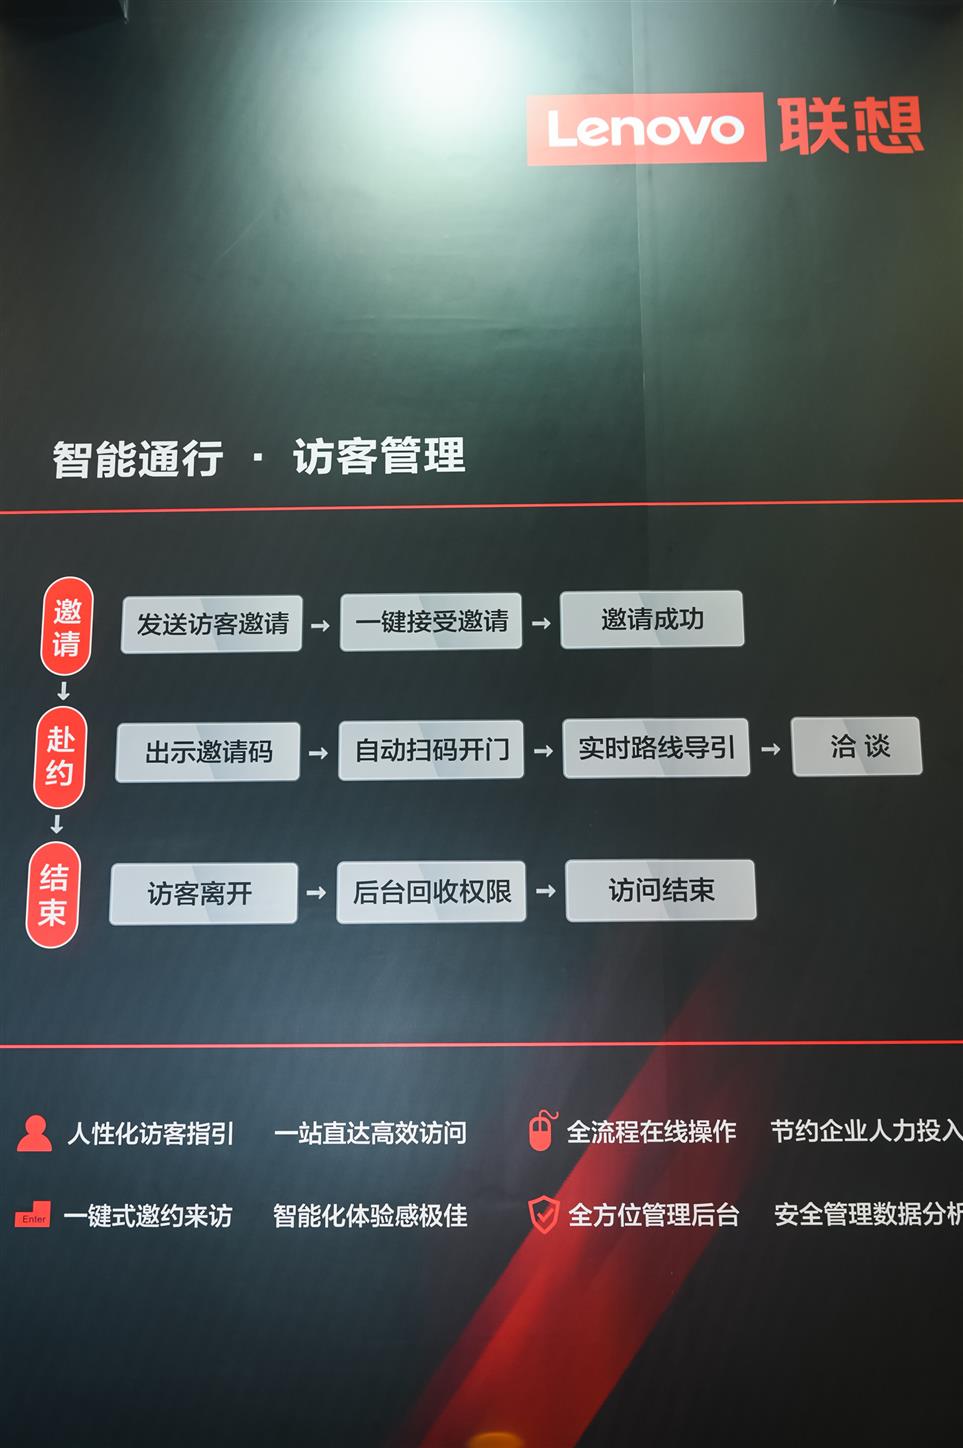 上海国际智能智慧办公展览会展位预定_火热进行中 上海国际智慧办公展SSOT